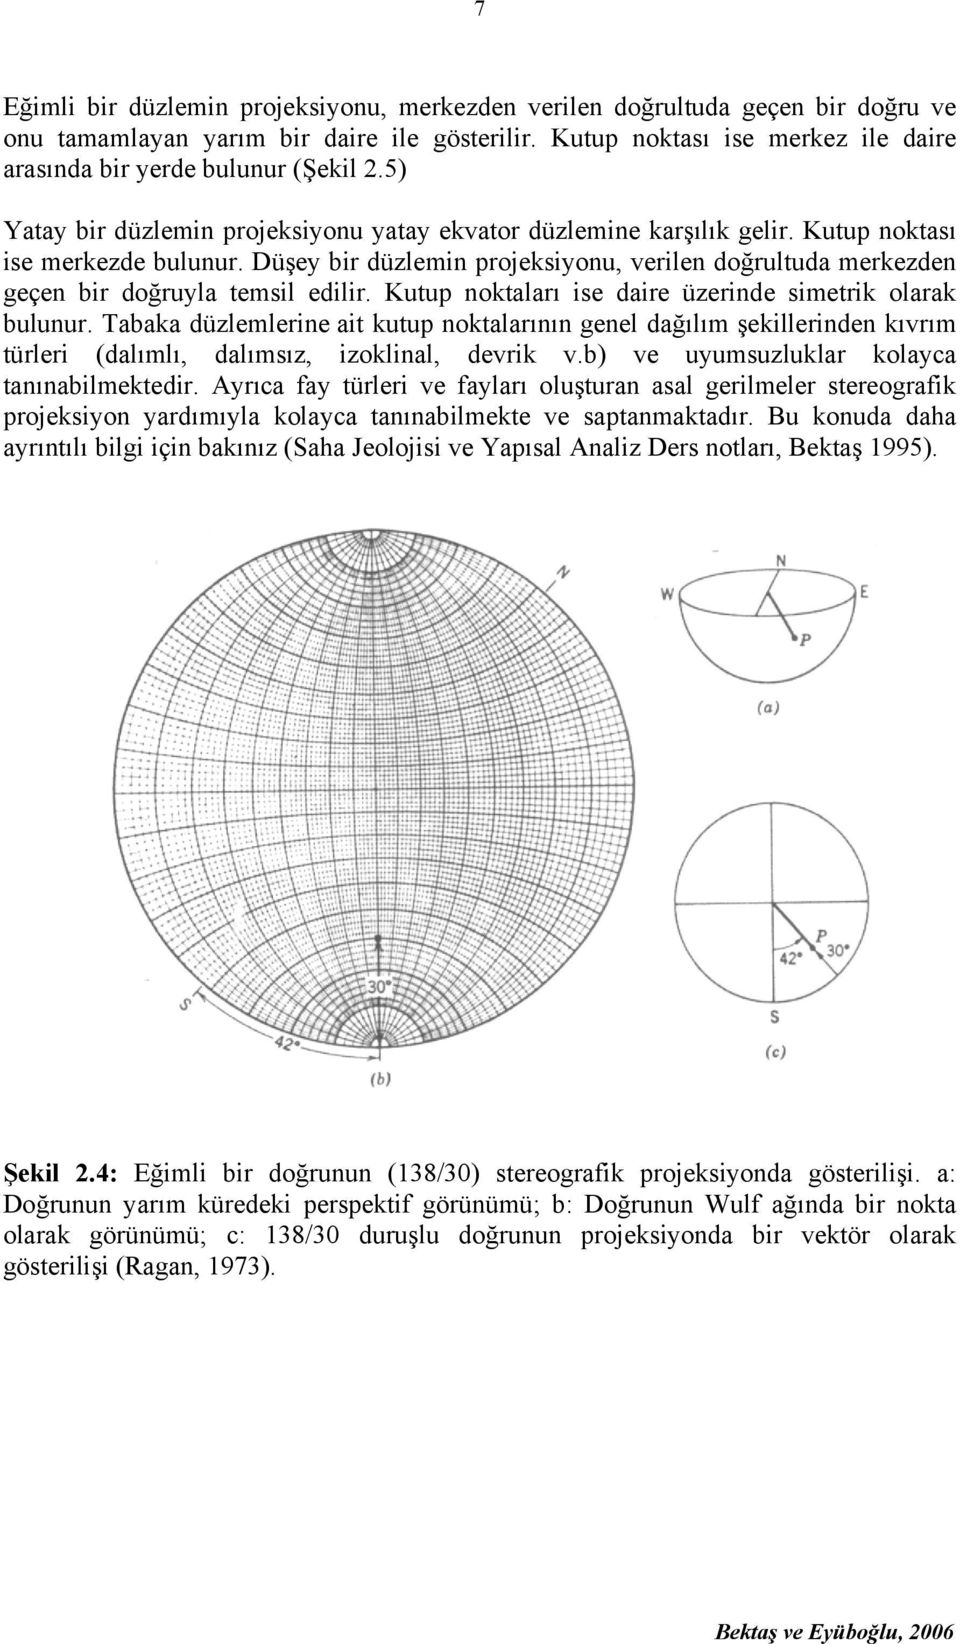 Düşey bir düzlemin projeksiyonu, verilen doğrultuda merkezden geçen bir doğruyla temsil edilir. Kutup noktaları ise daire üzerinde simetrik olarak bulunur.